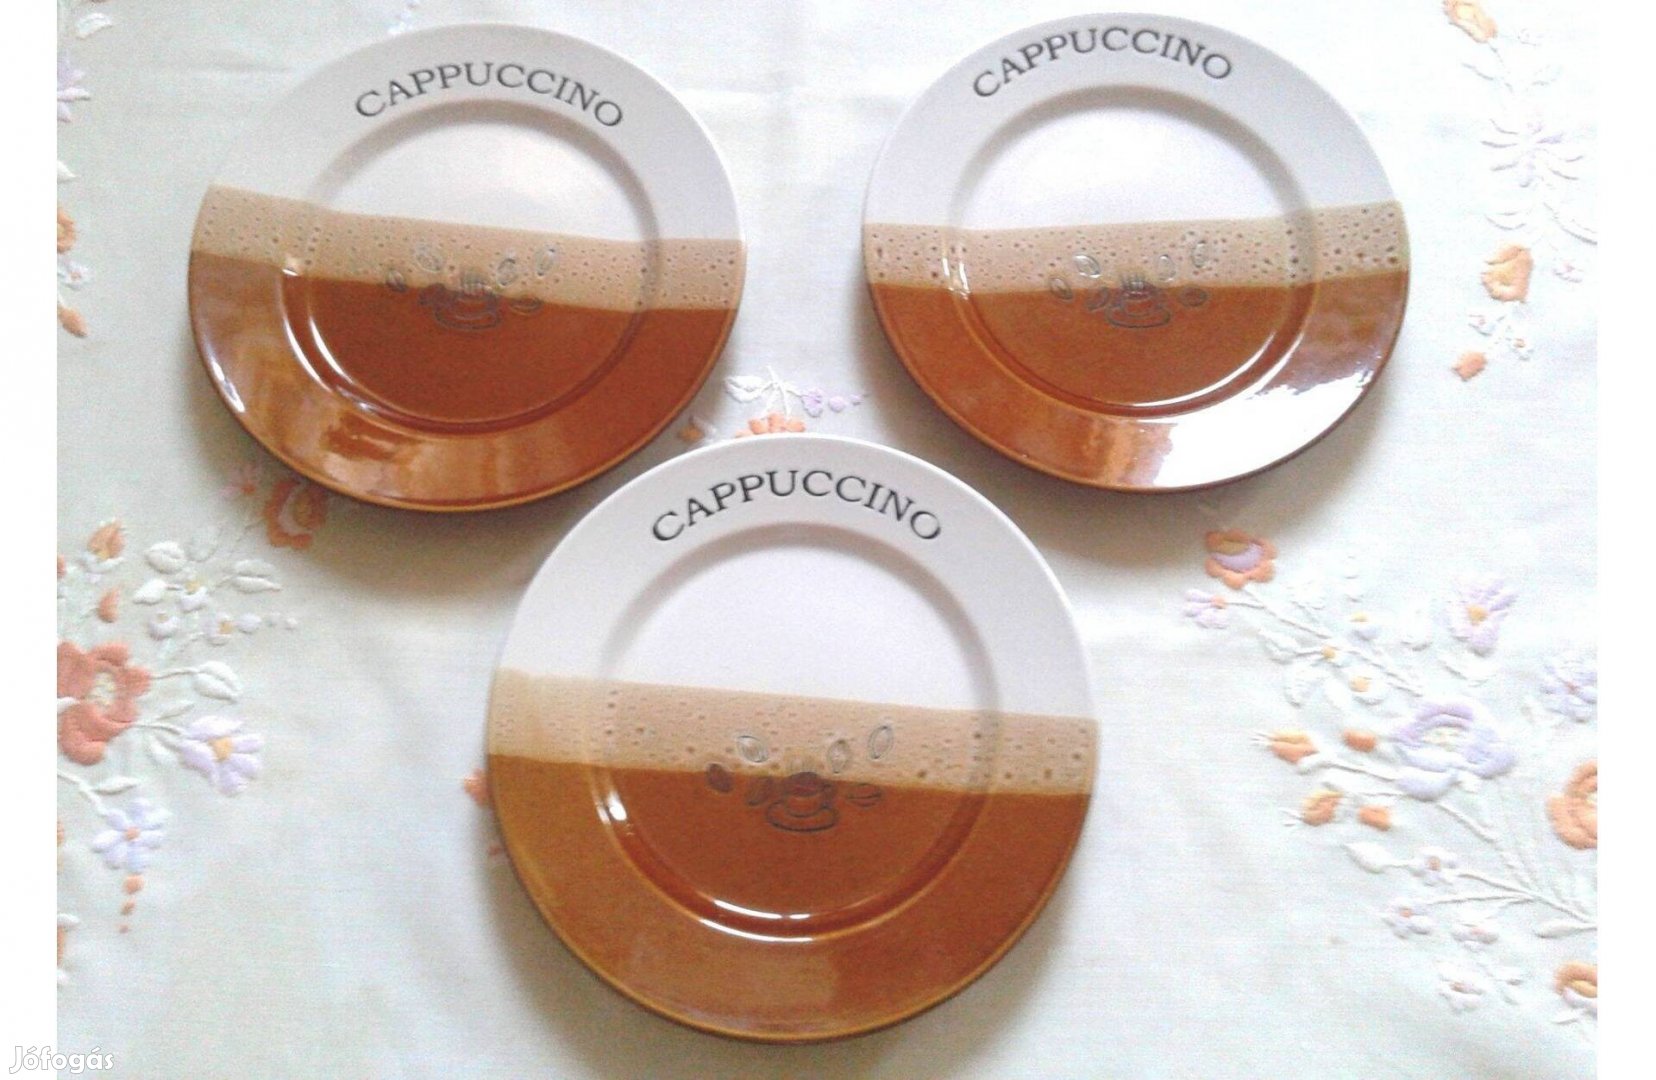 3 db cappuccinó feliratú süteményes tányér szép színösszeállításban